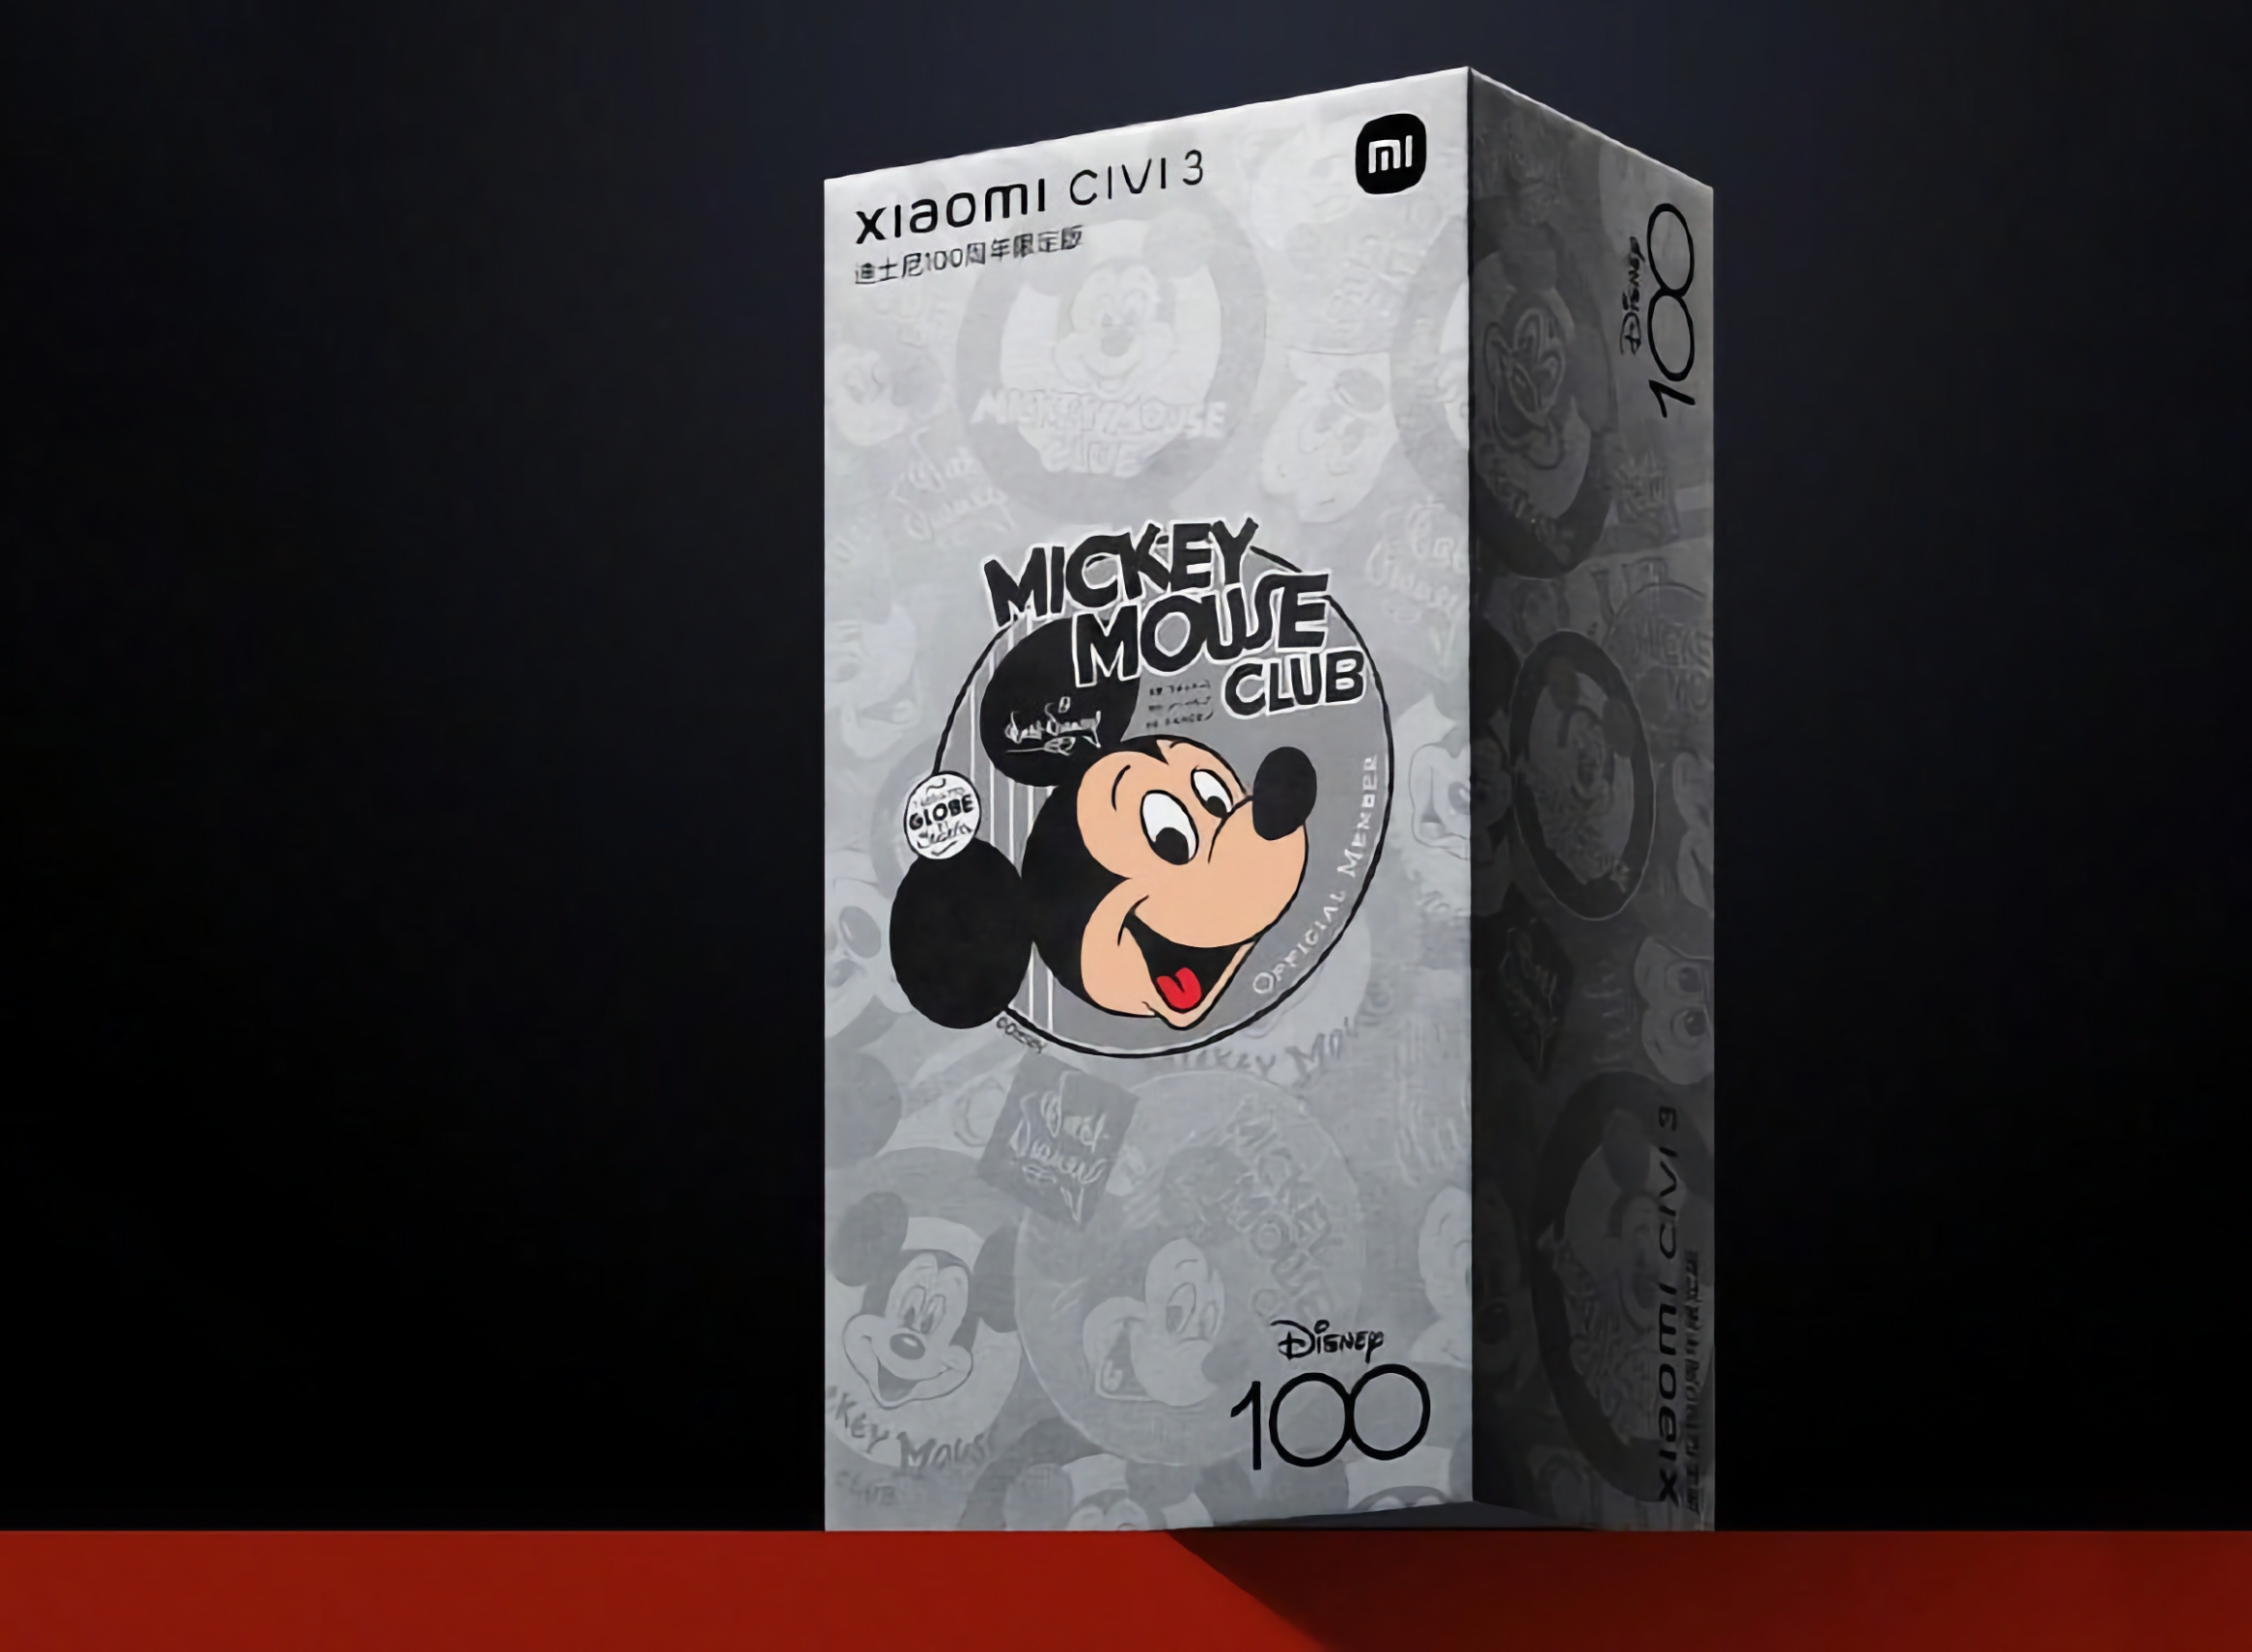 Xiaomi stellt im Juni eine spezielle Version des Civi 3 Smartphones vor, um das 100-jährige Jubiläum der Walt Disney Company zu feiern